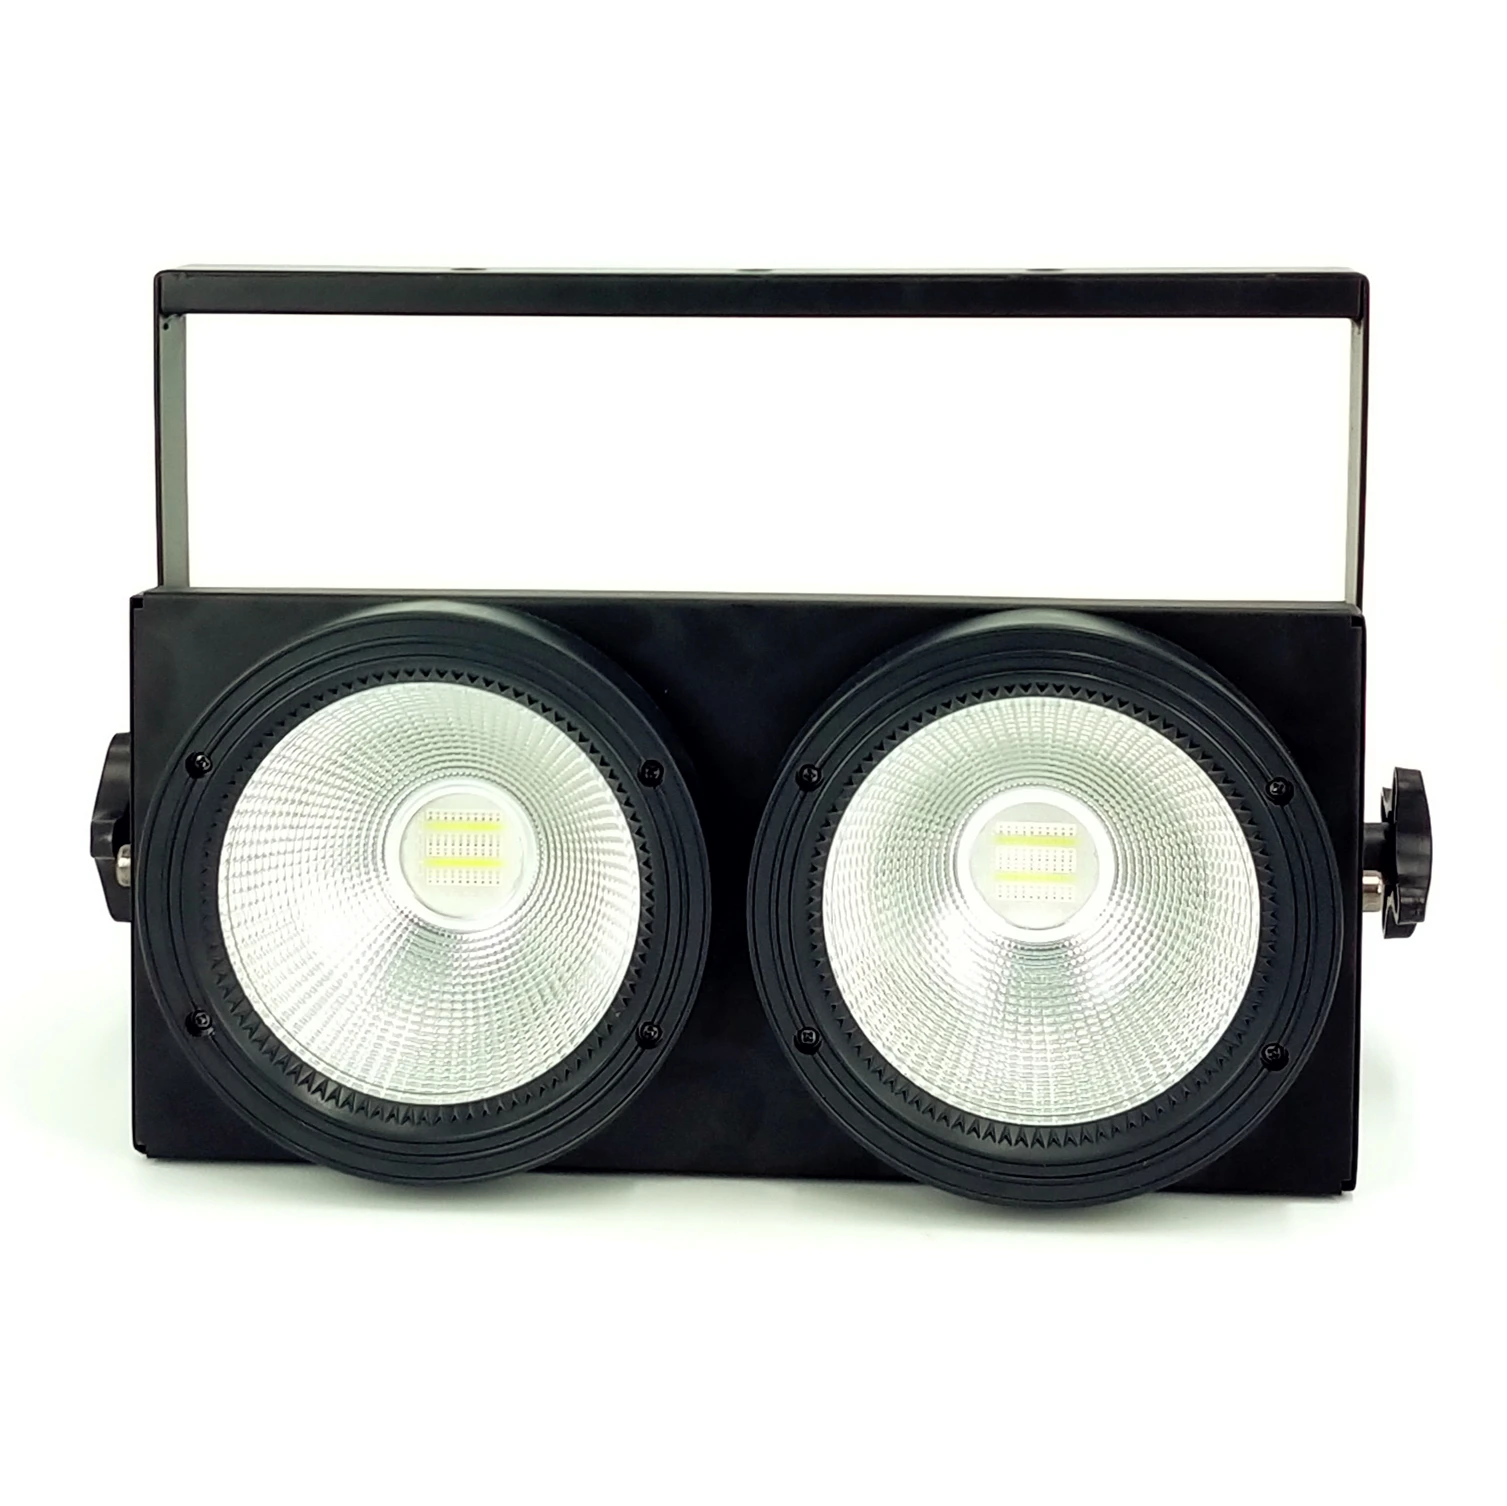 2x100 Вт Led COB Par Светильник s 200 Вт Светодиодный светильник для зрителей s RGBWA UV 6в1 теплый белый холодный белый светодиодный стробоскоп моющийся диско-dj светильник